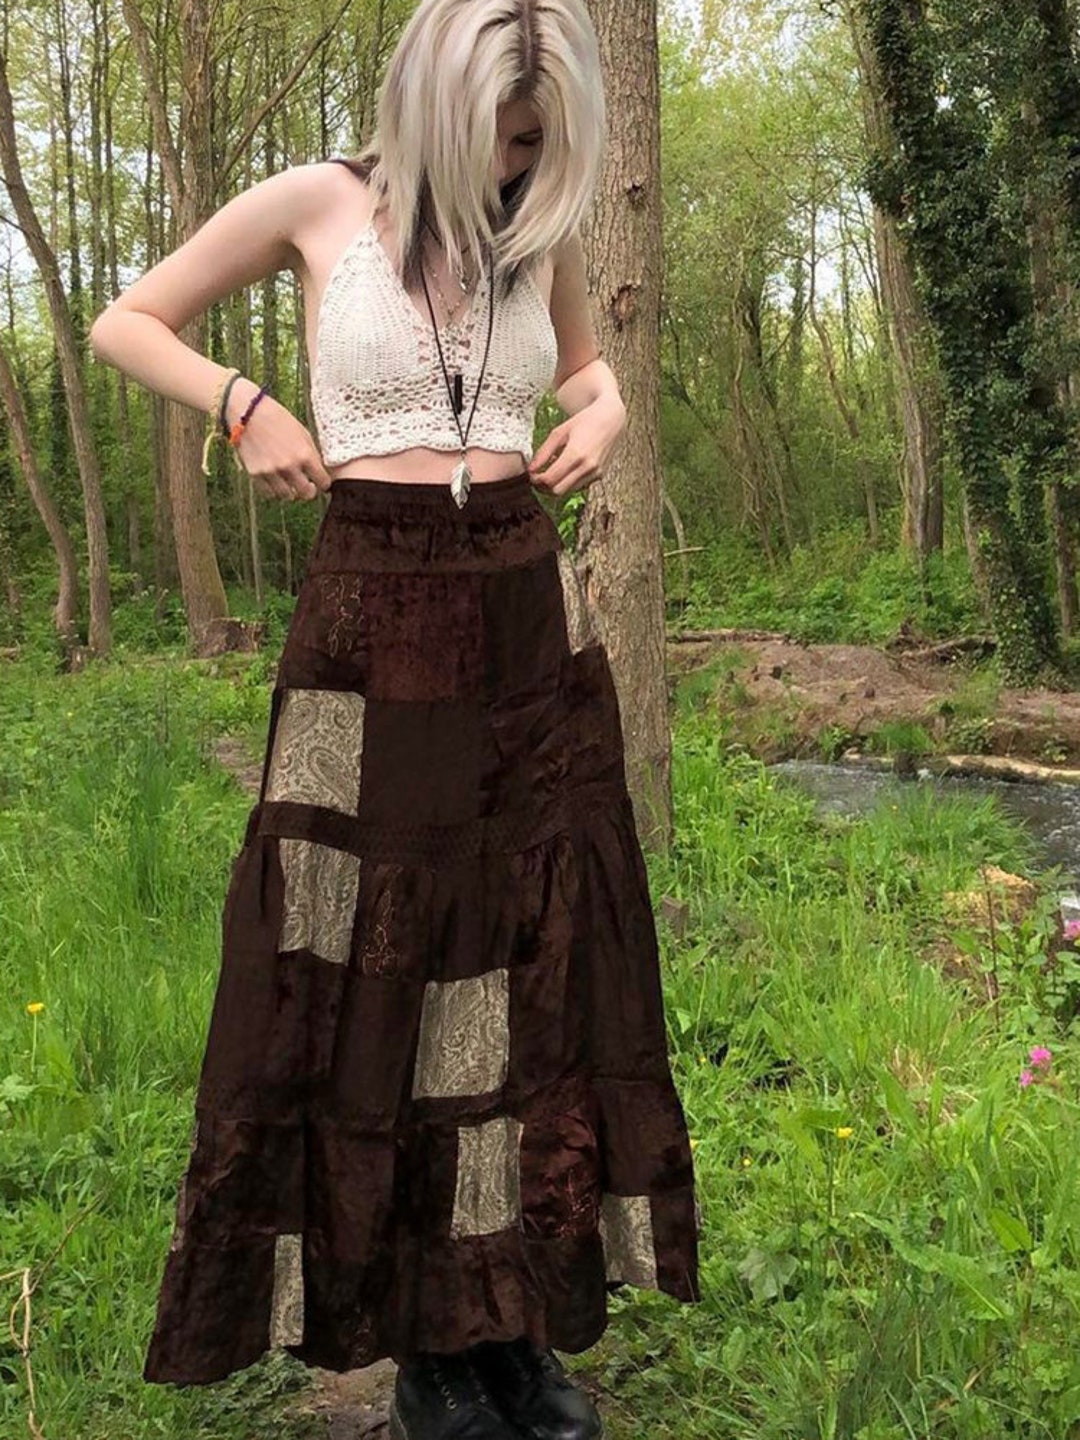 Stylish Y2K Fairycore Maxi Skirt With Grunge Boho Aesthetic - Etsy